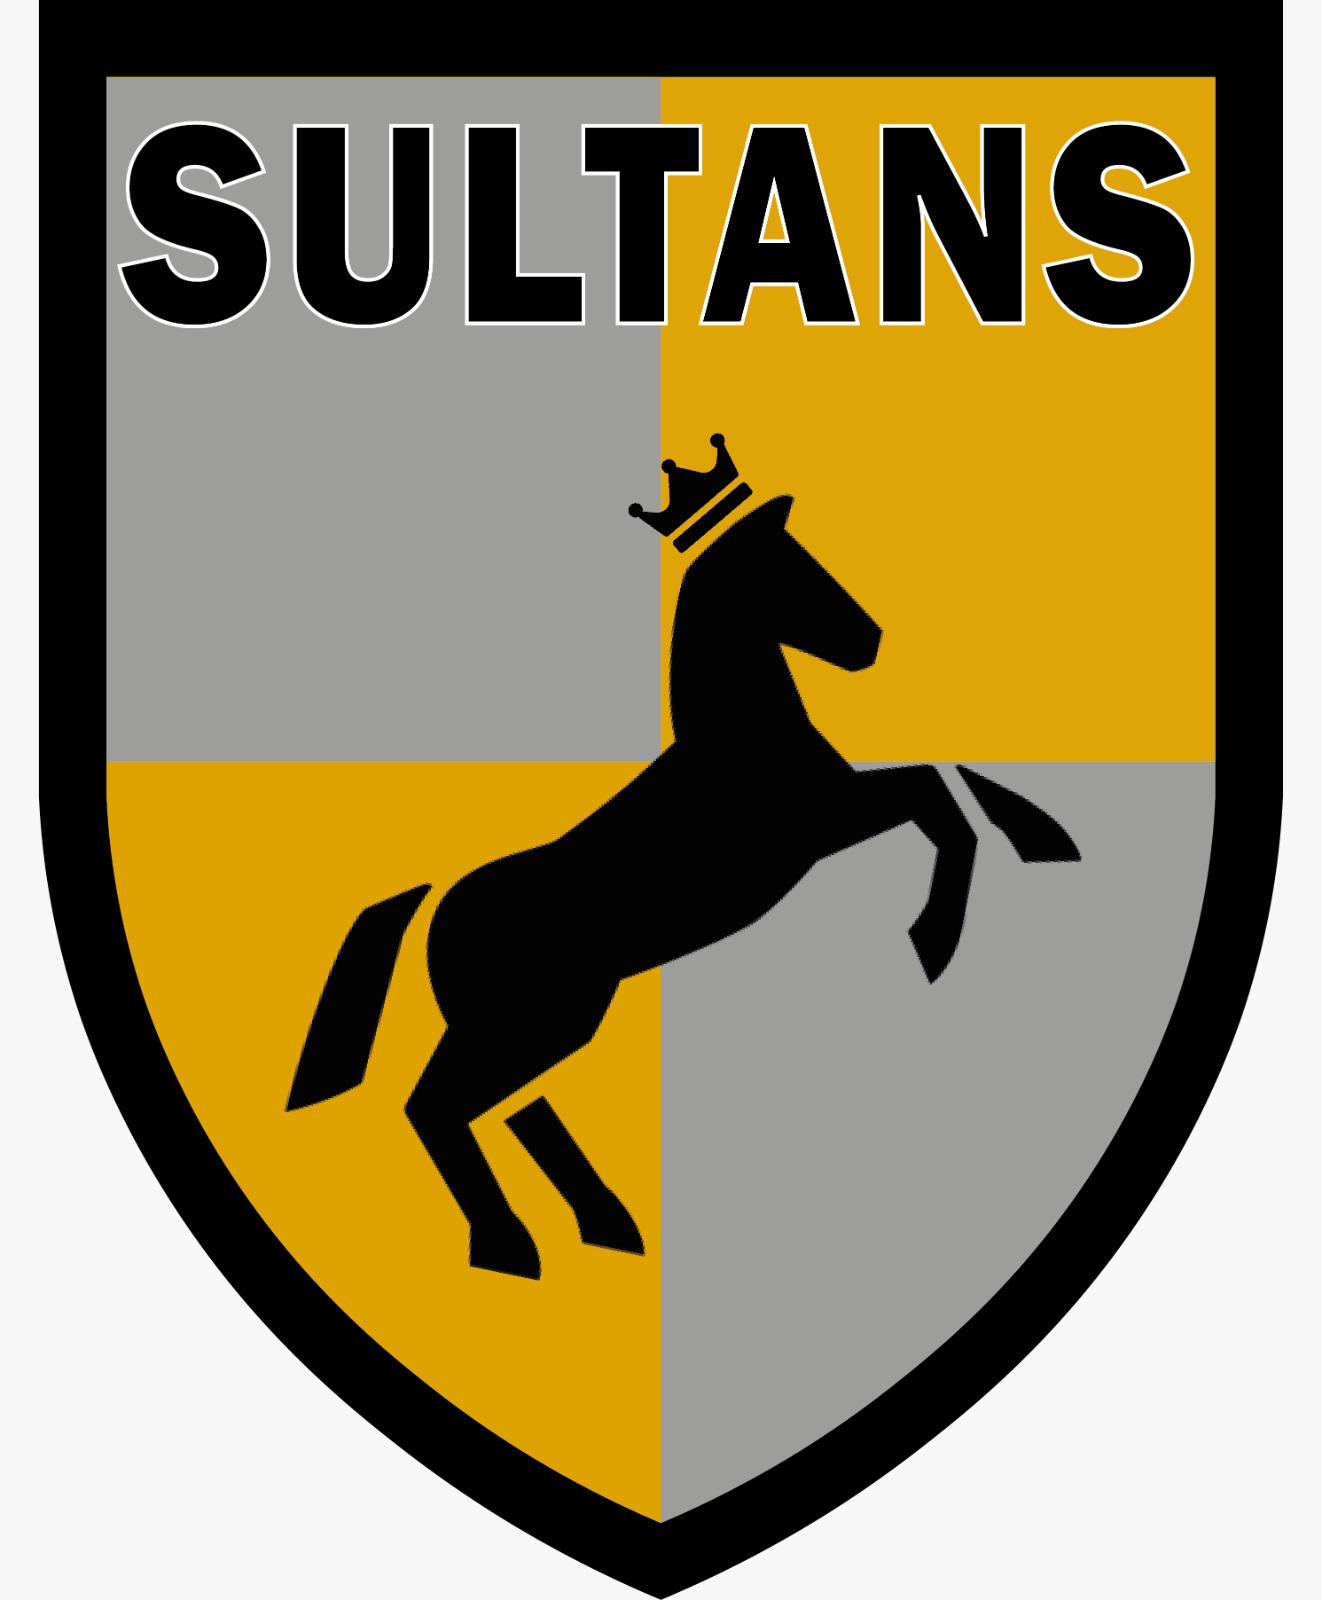 Sultans Cricket Club